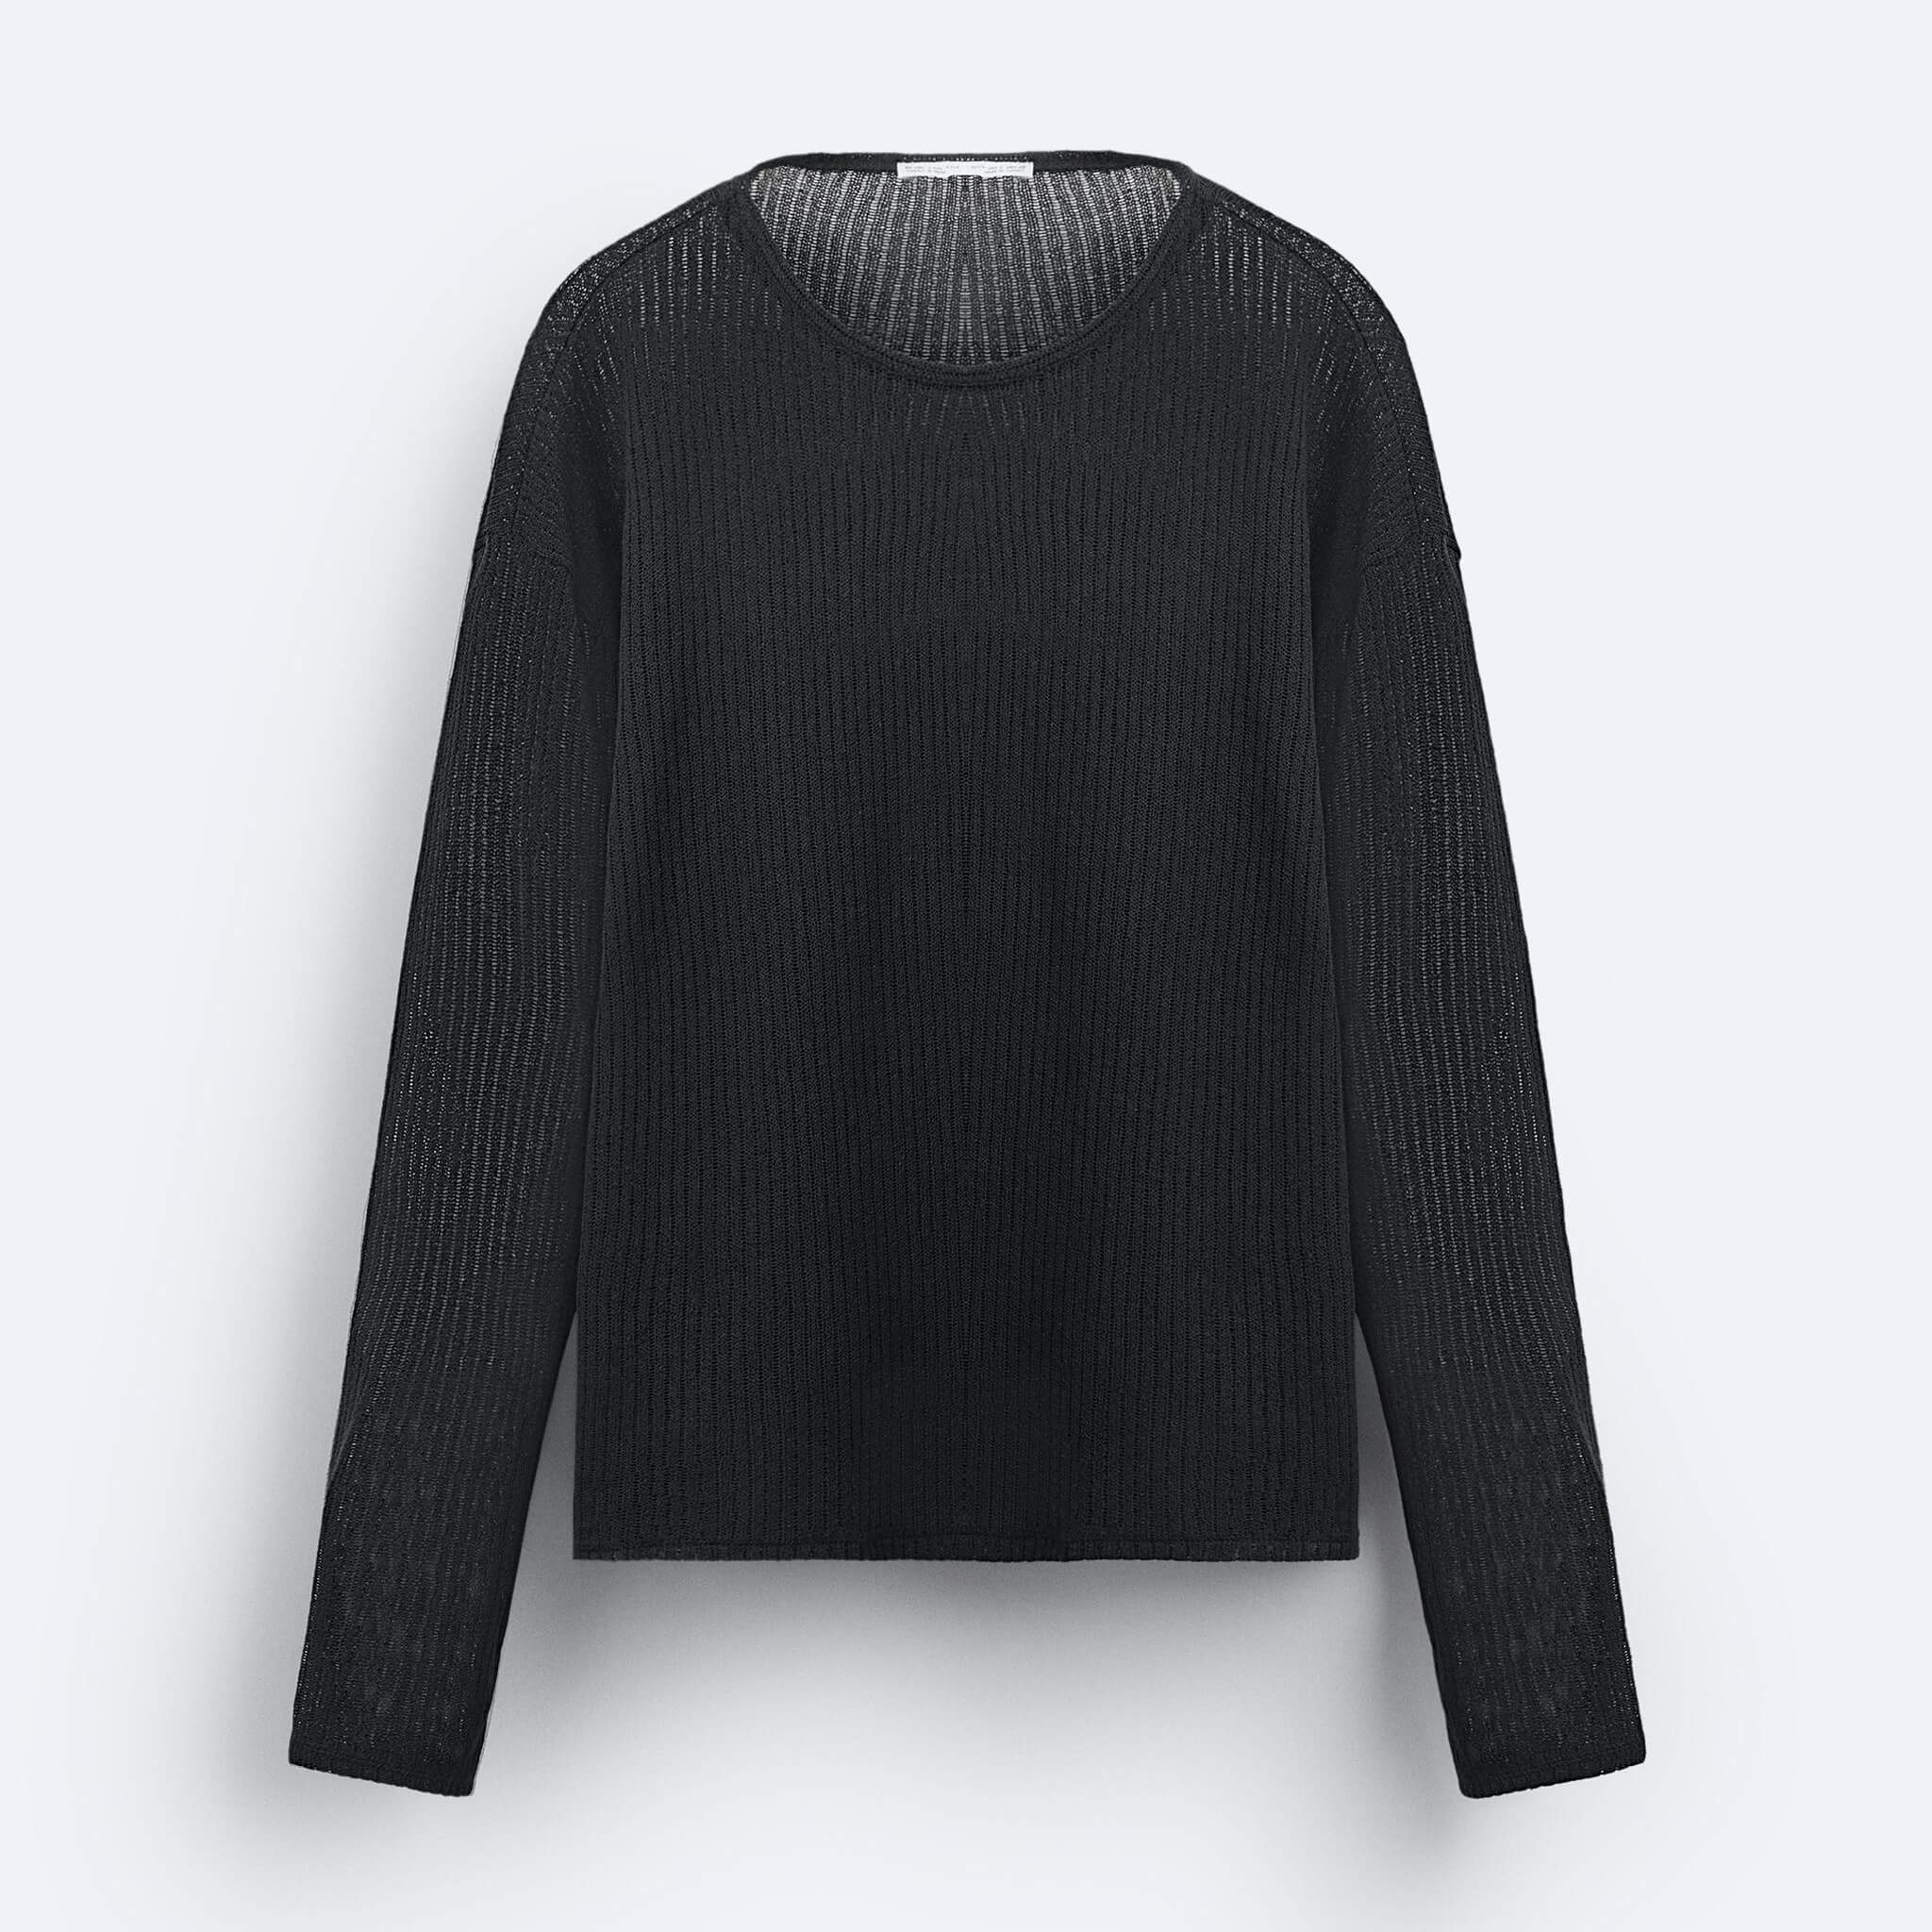 Свитшот Zara Textured Open Knit, черный толстовка женская с длинным рукавом свободного покроя